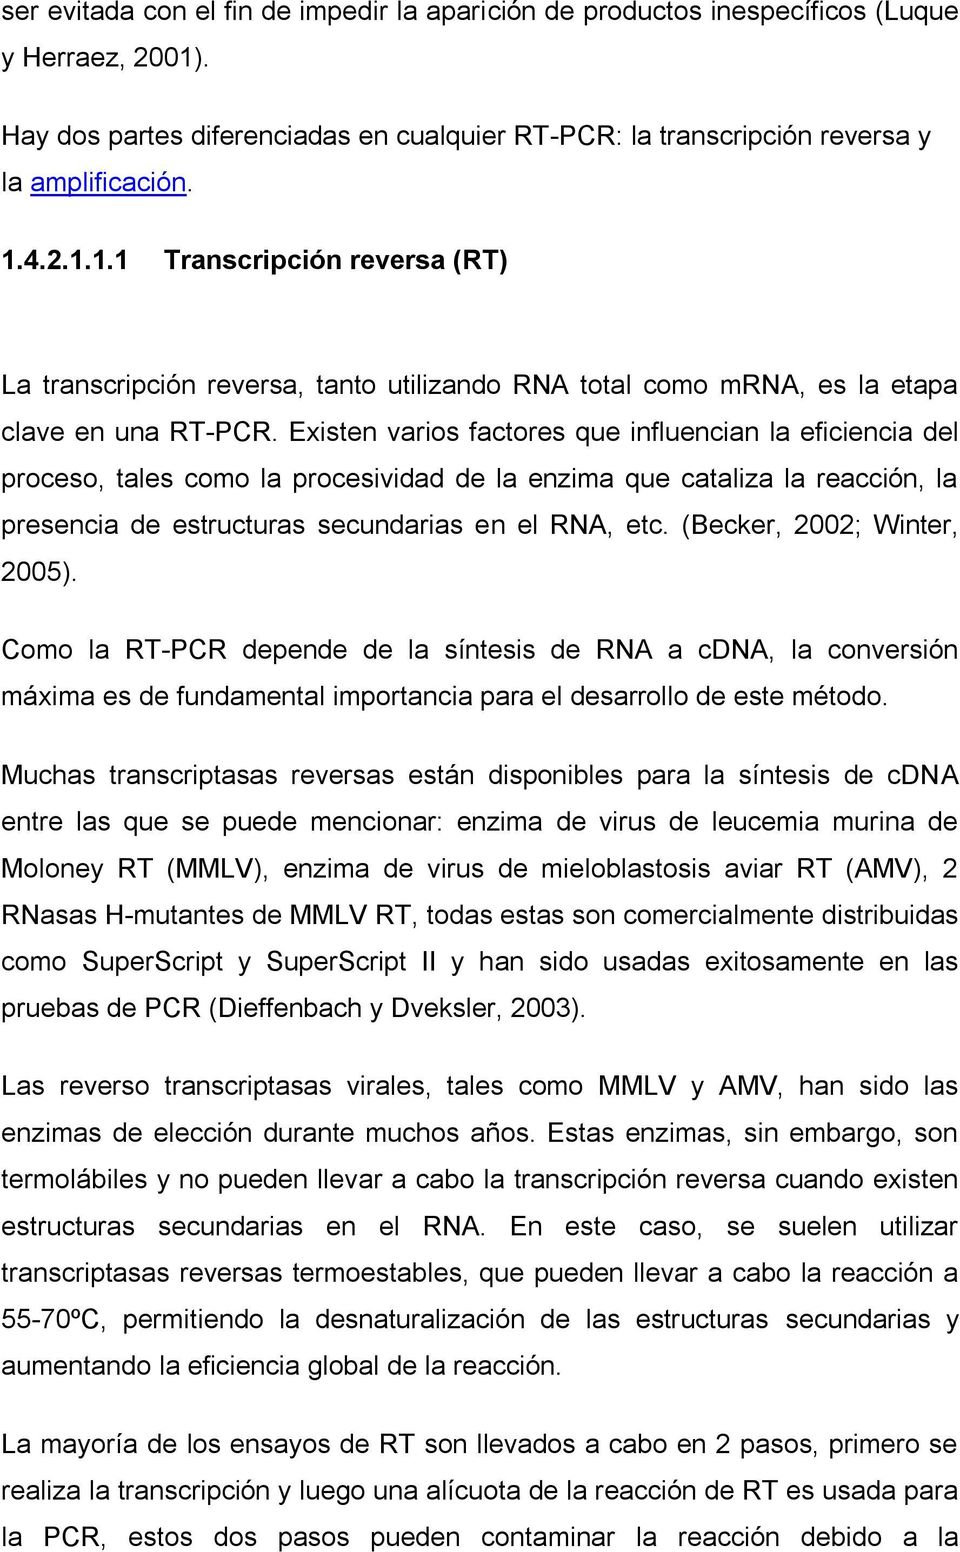 4.2.1.1.1 Transcripción reversa (RT) La transcripción reversa, tanto utilizando RNA total como mrna, es la etapa clave en una RT-PCR.